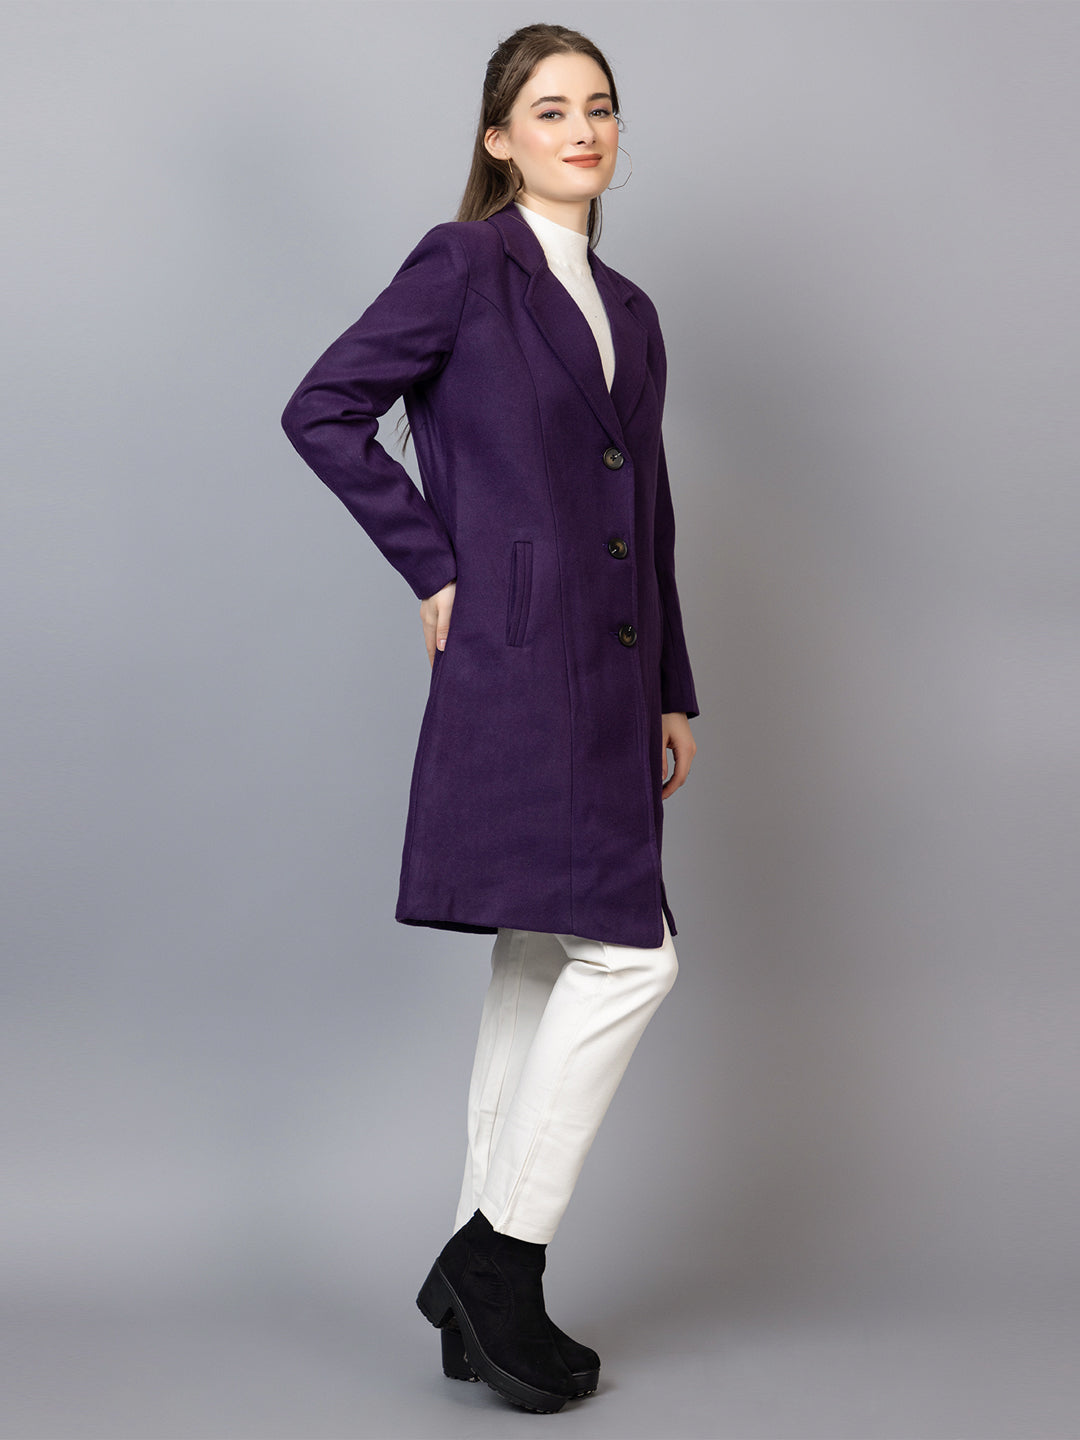 Women Notched Lapel Collar Woolen Overcoat